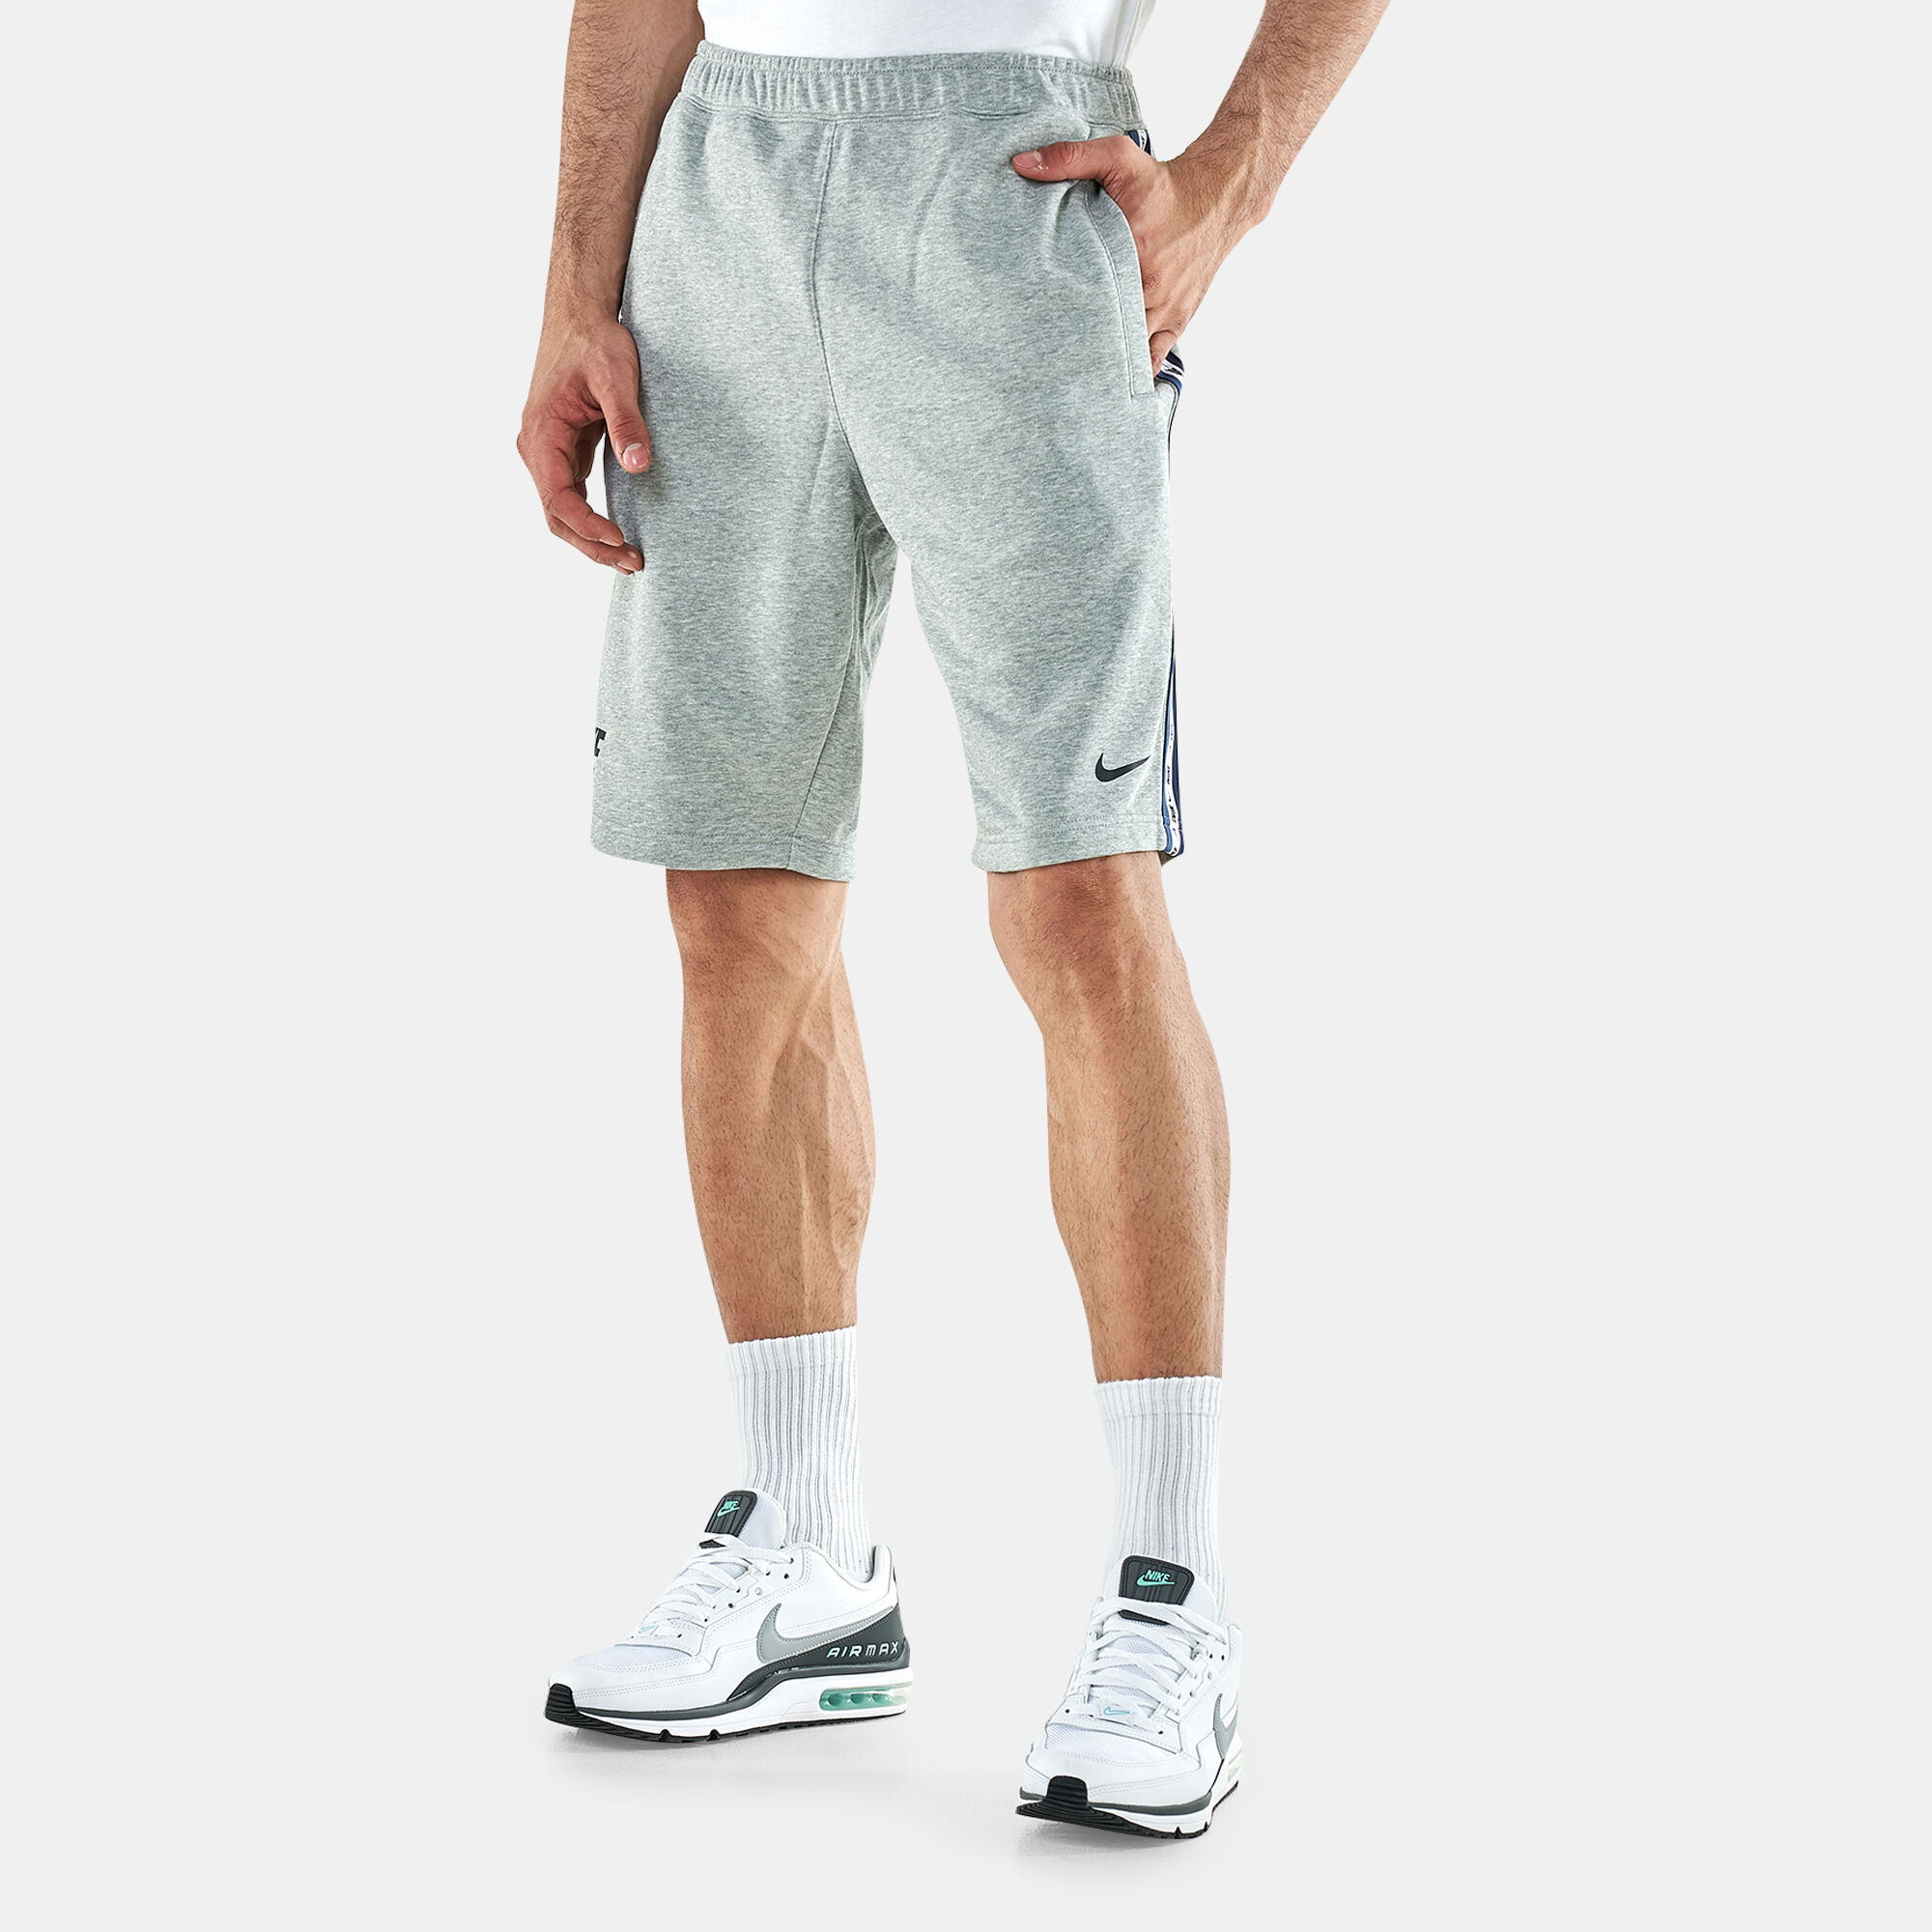 Спортивные шорты мужские Nike Nsw Repeat Ft Short DR9973-063 серые M